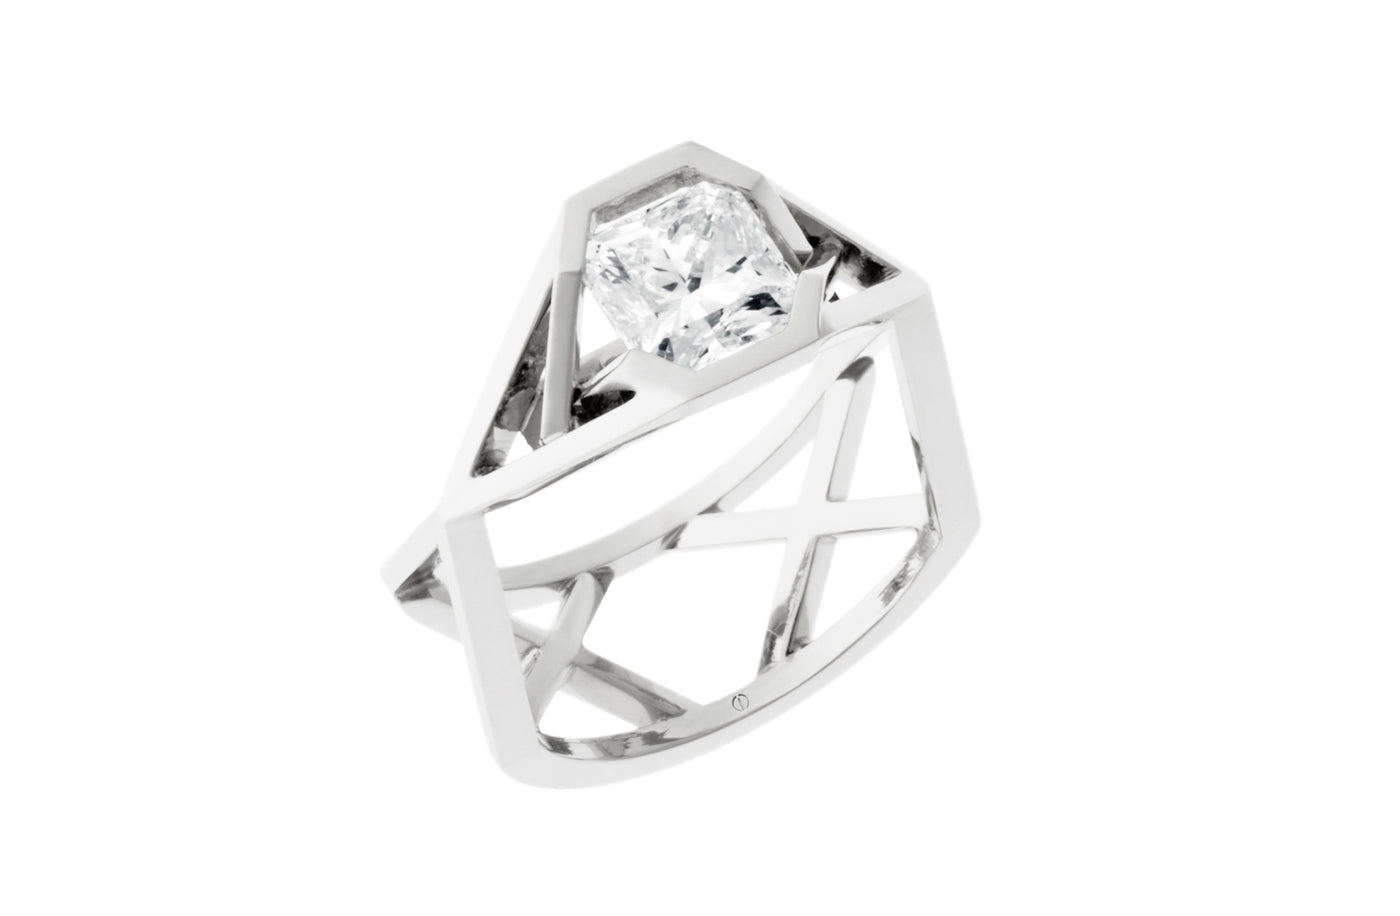 Manhattan: Radiant Cut Diamond Solitaire Ring